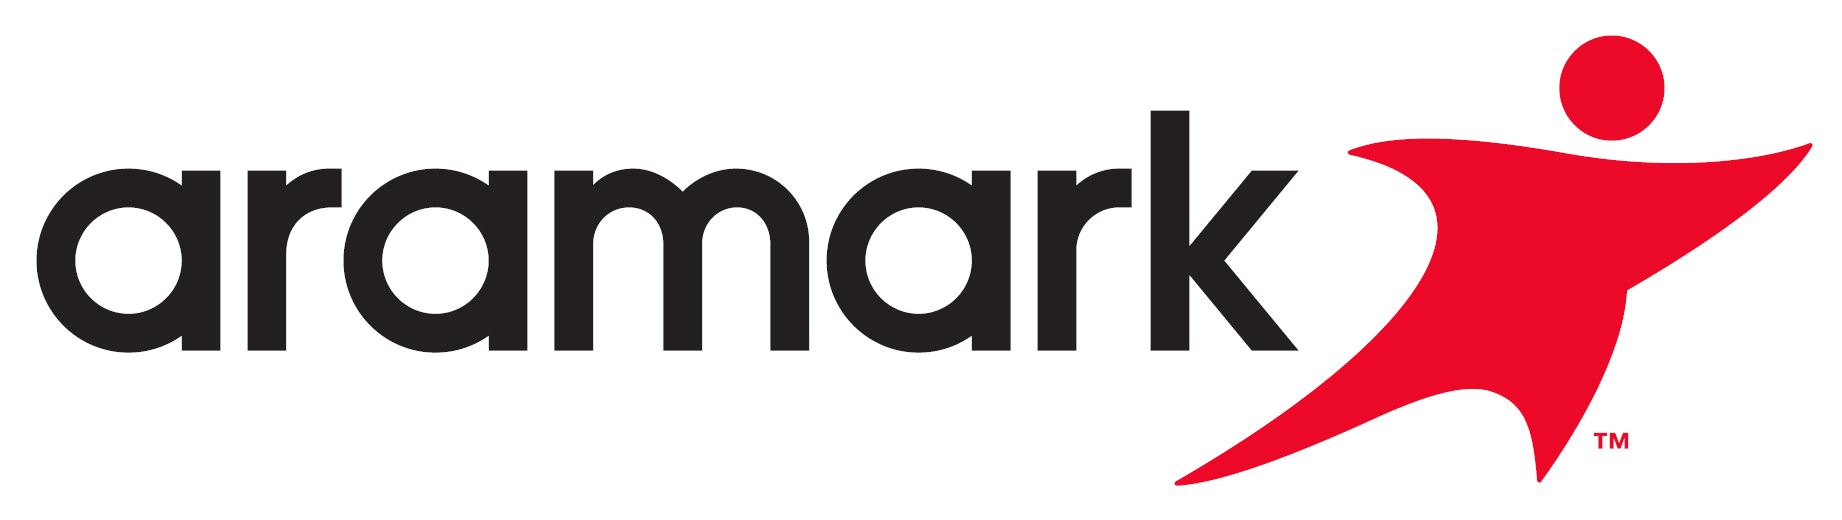 Aramark_Logo